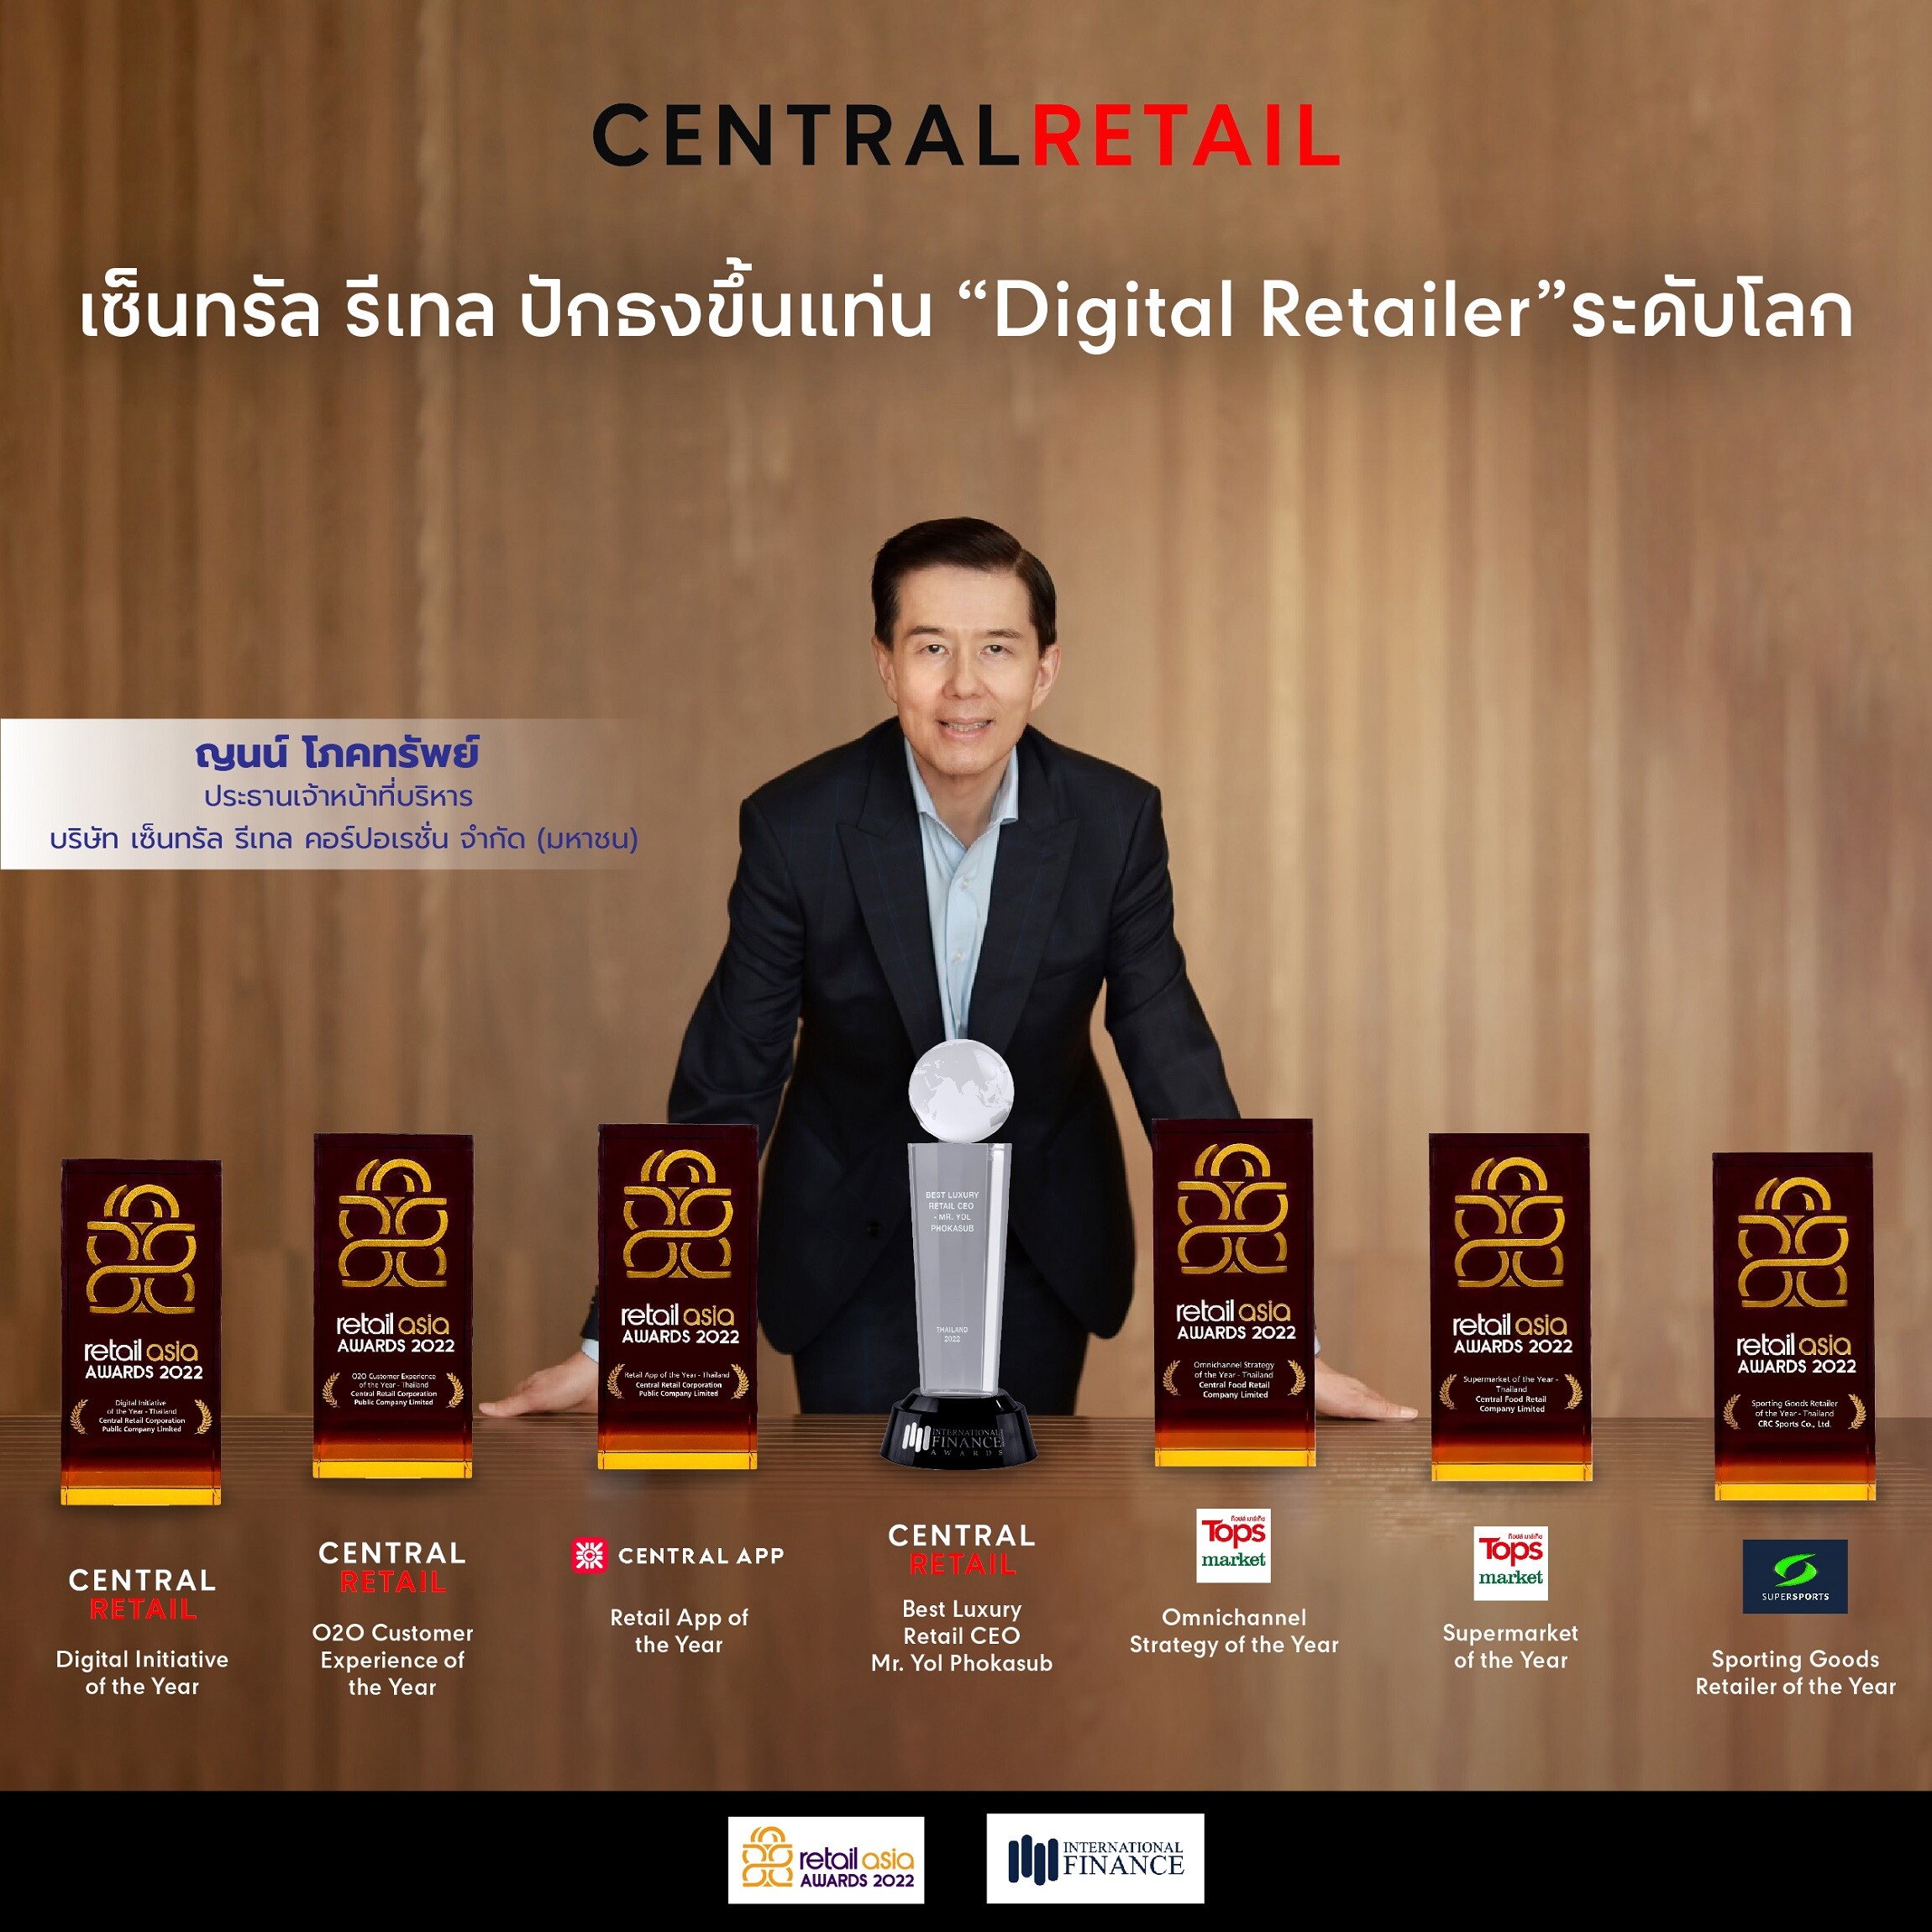 เซ็นทรัล รีเทล ปักธงขึ้นแท่น "Digital Retailer" ระดับโลก